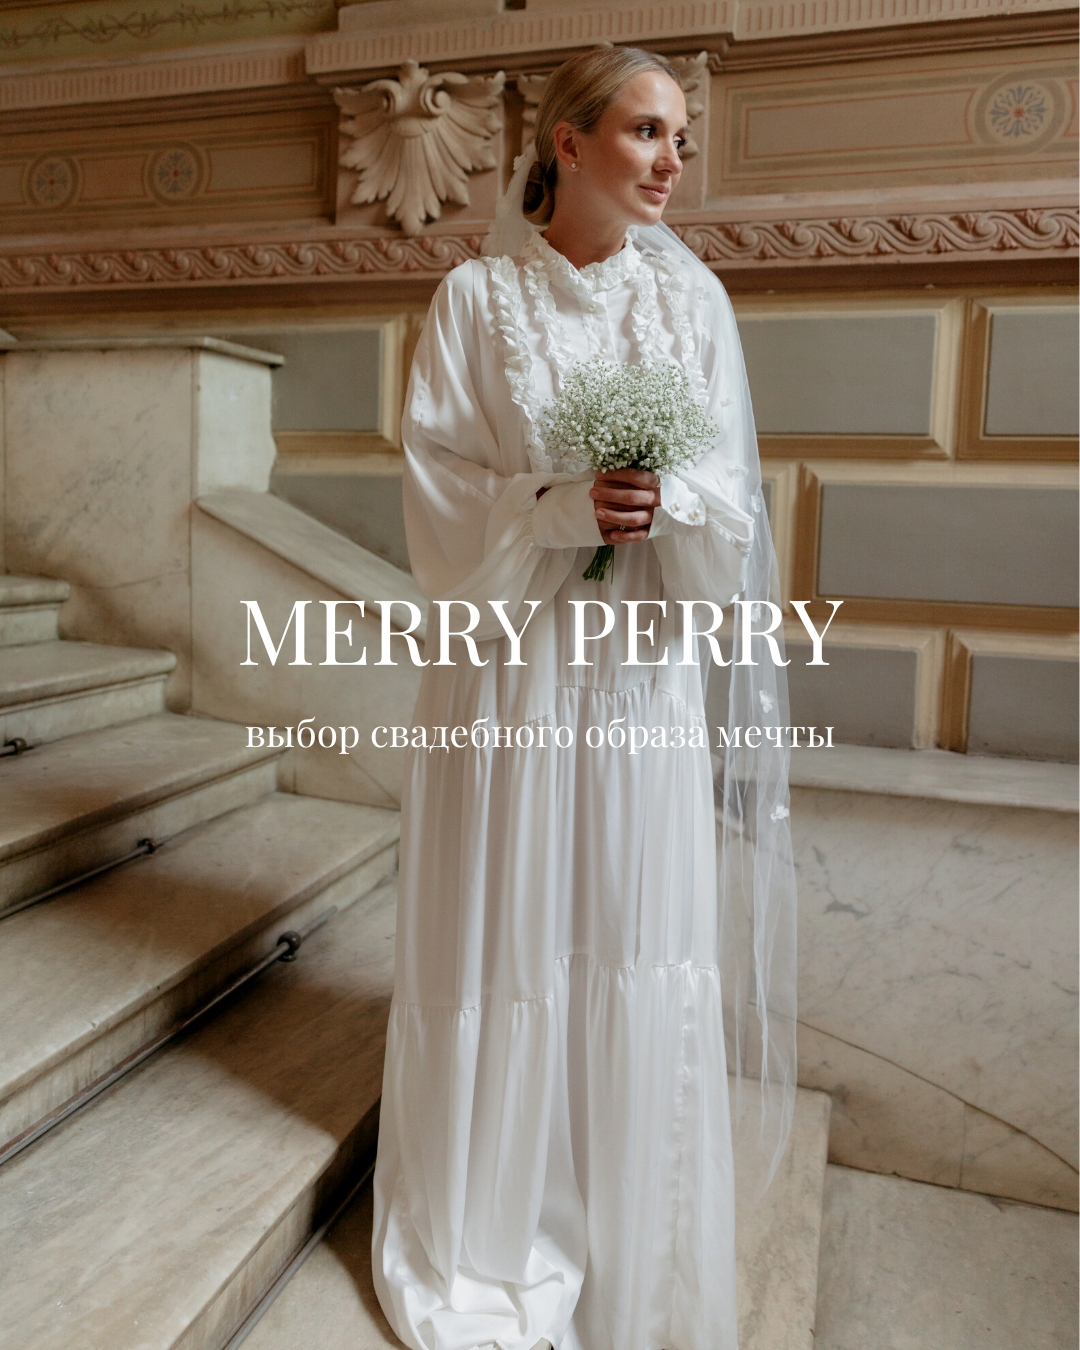 Бренд &#171;Merry Perry&#187;: обзор новой коллекции